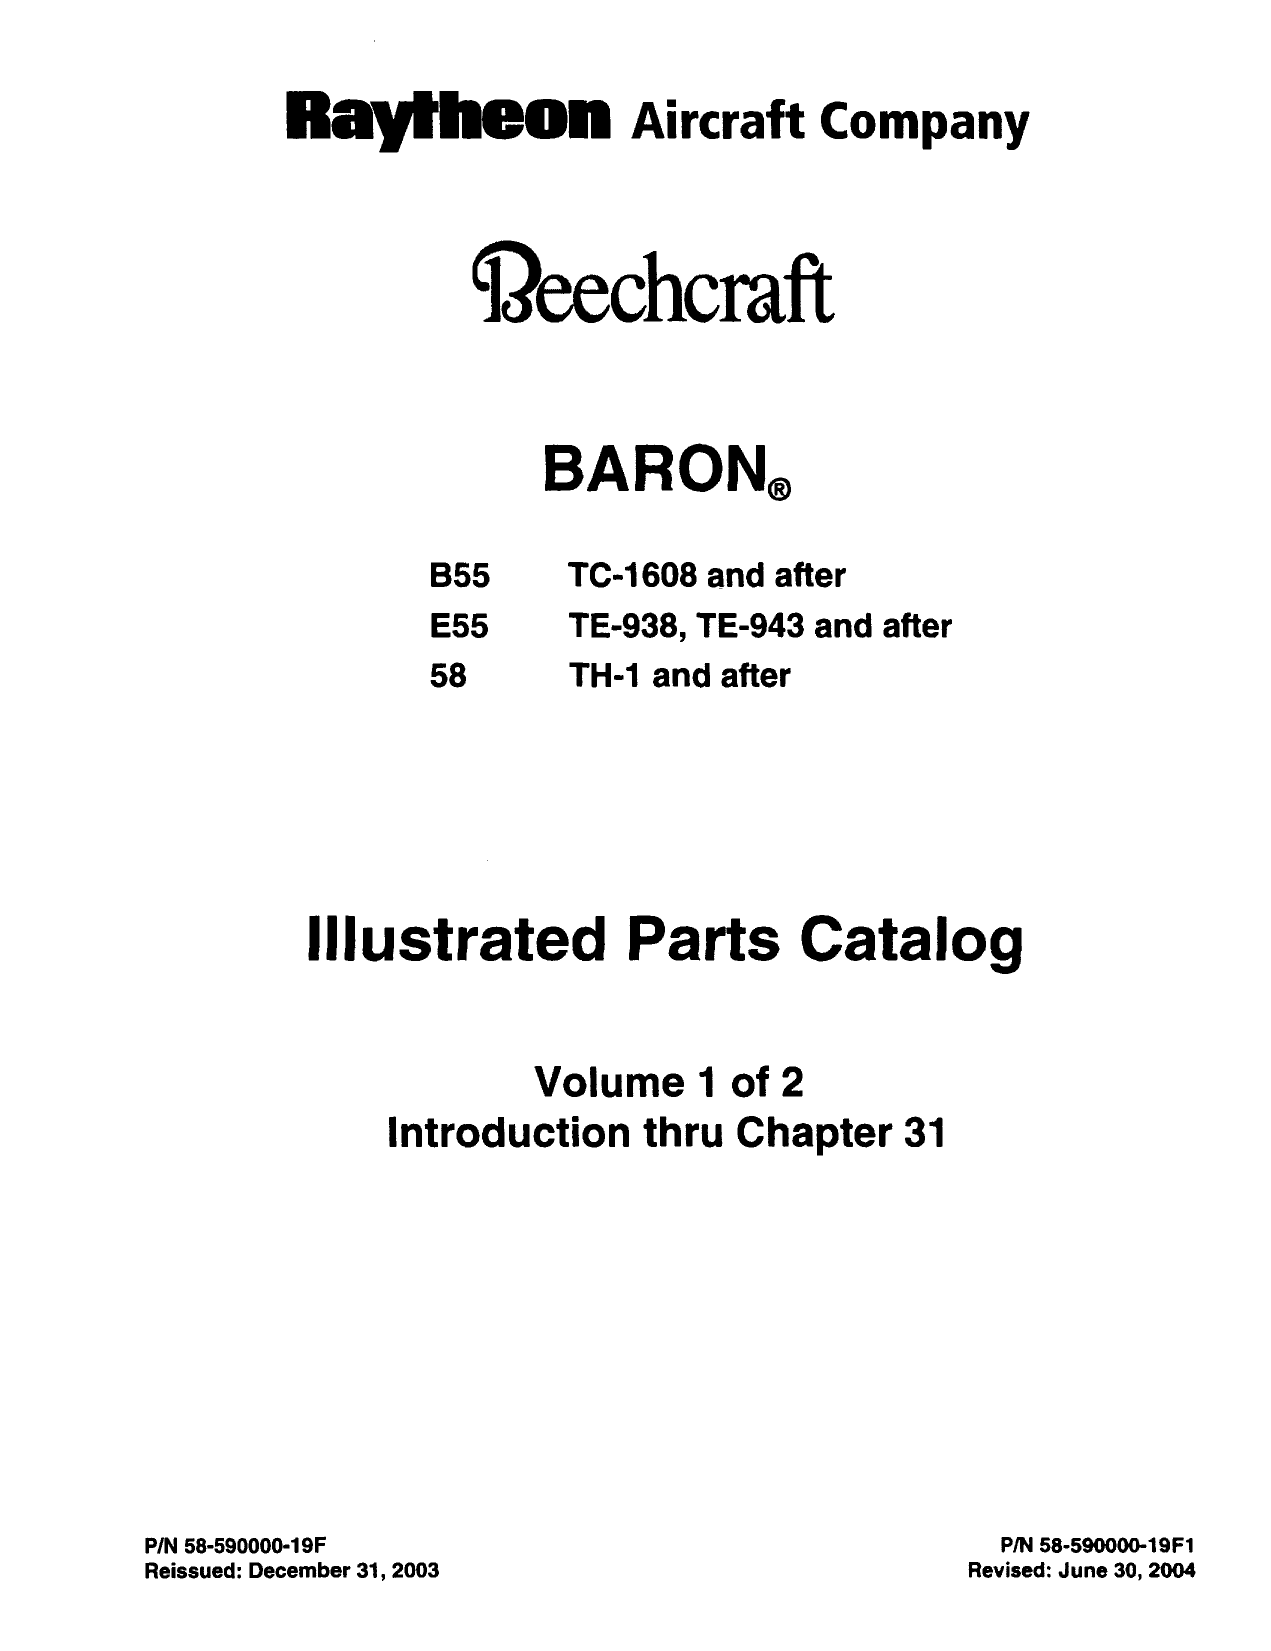 2004 Beechcraft Baron B55, Baron E55, Baron 58 IPC parts catalog Preview image 6